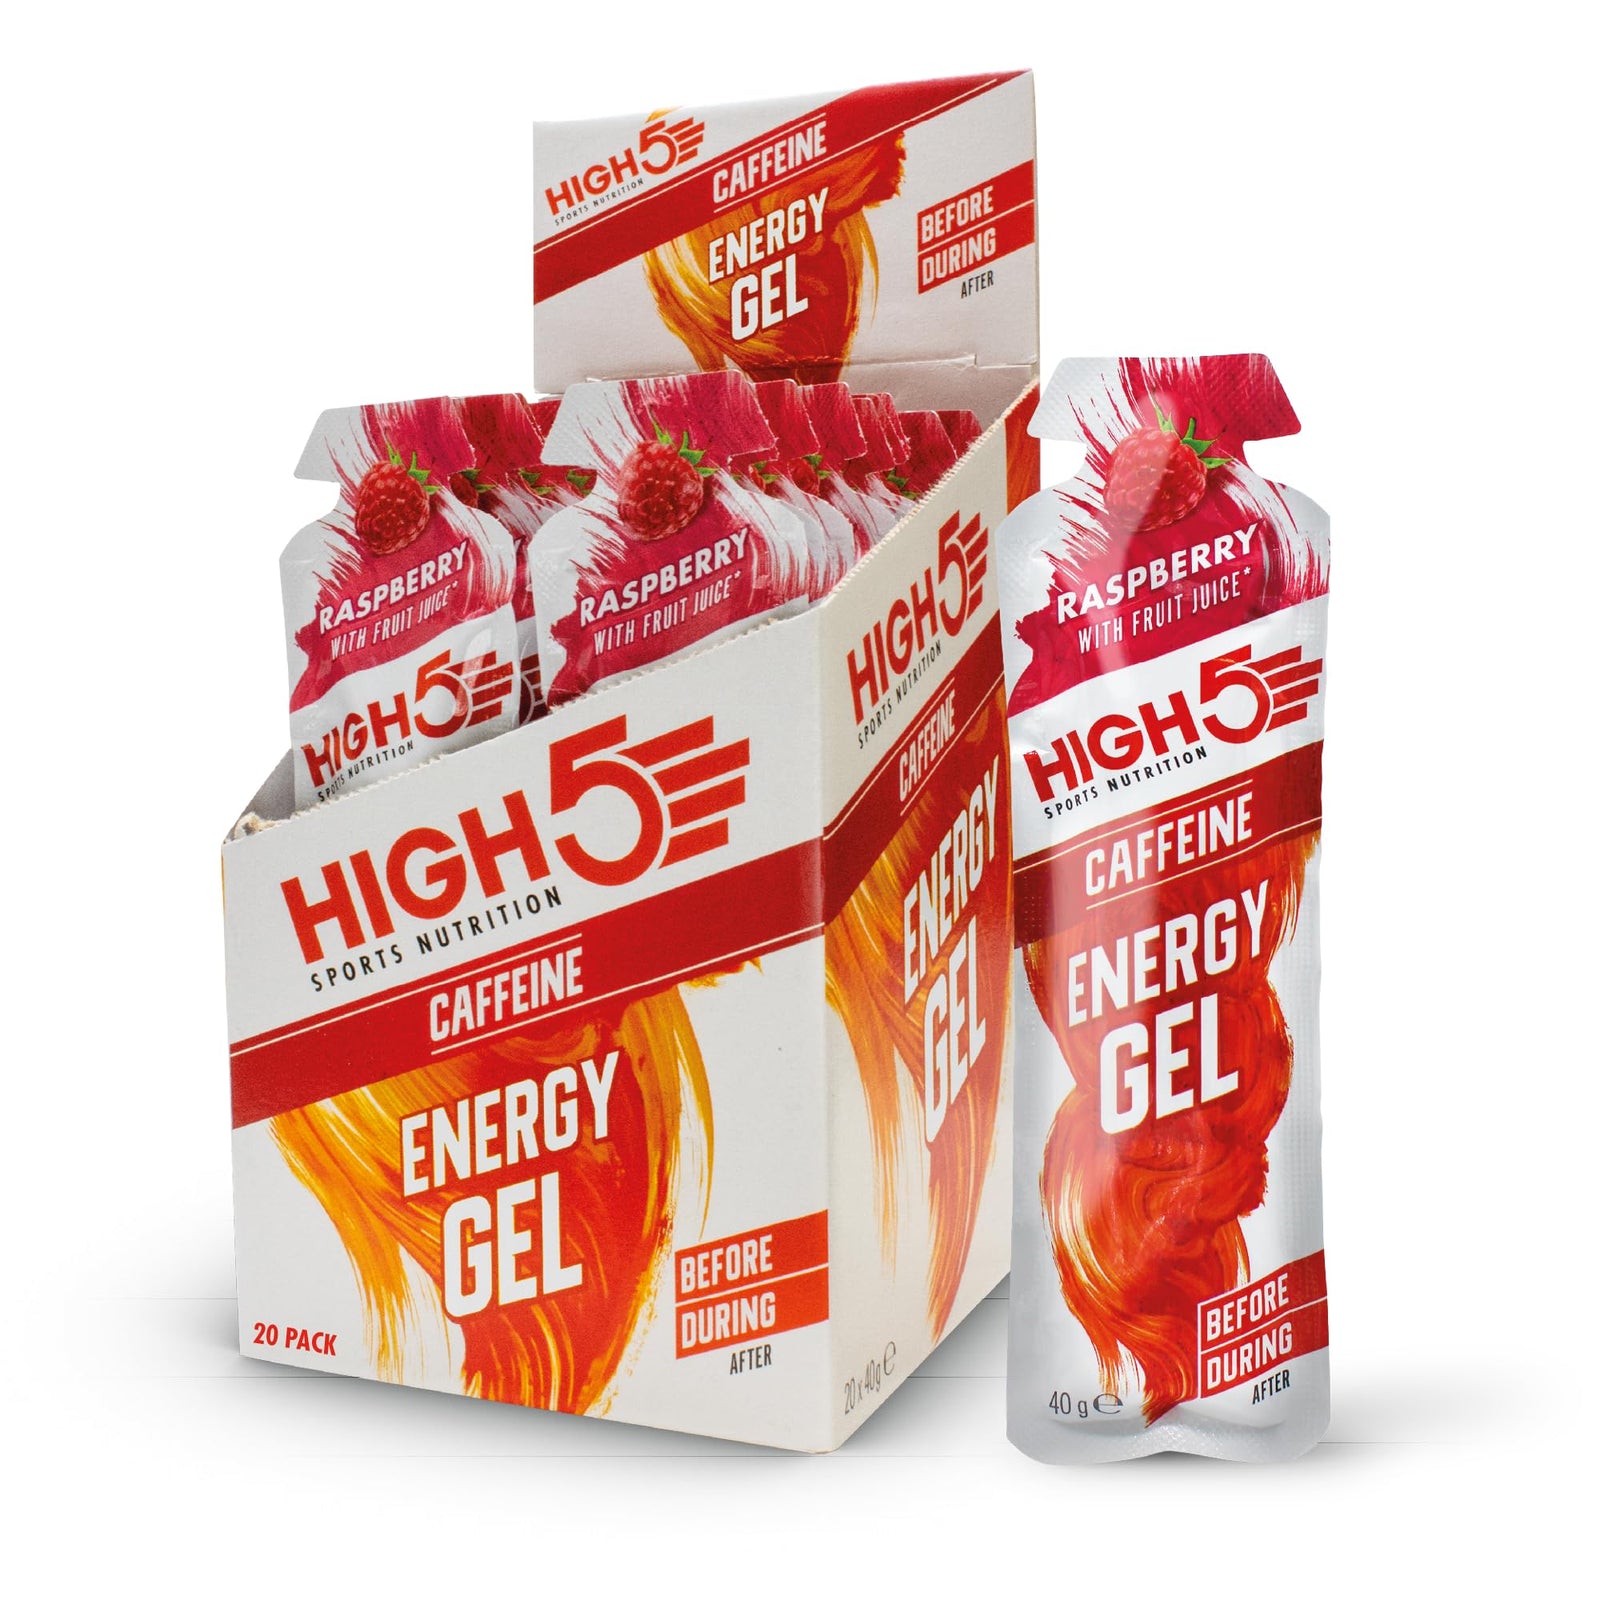 High 5 Energy Gel 20 Pack - Berry